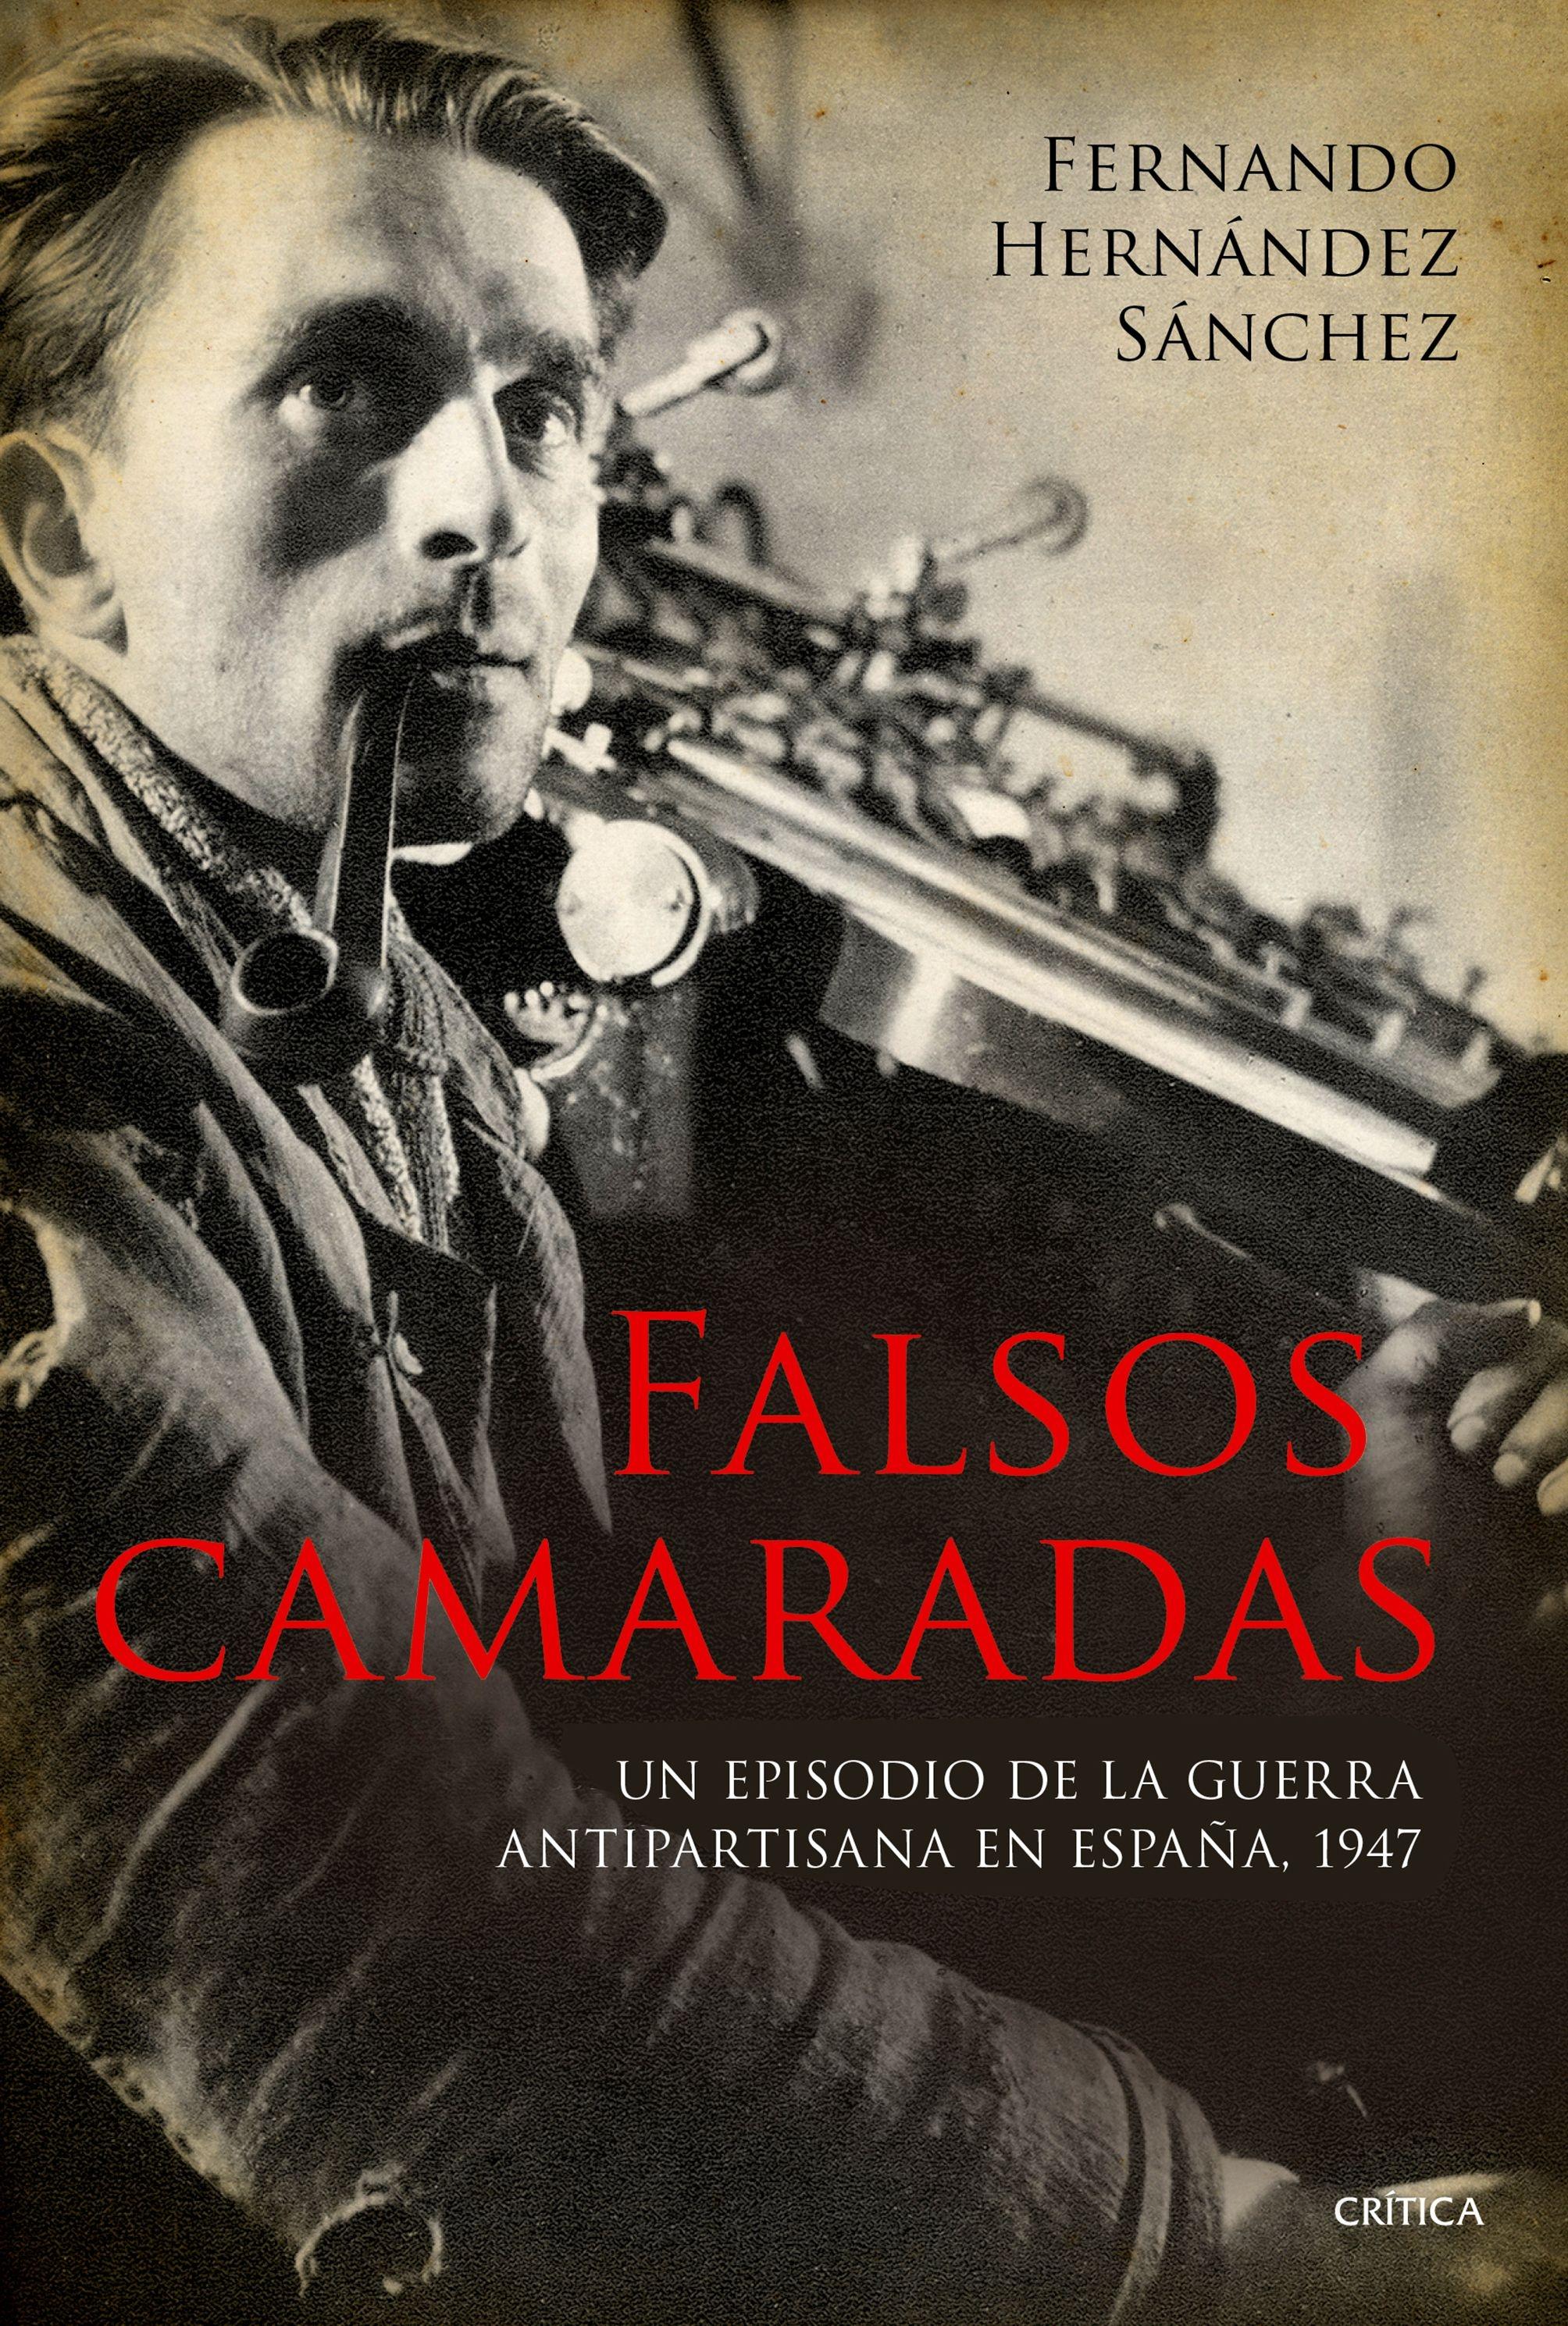 Falsos Camaradas "Un Episodio de la Guerra Antipartisana en España, 1947". 